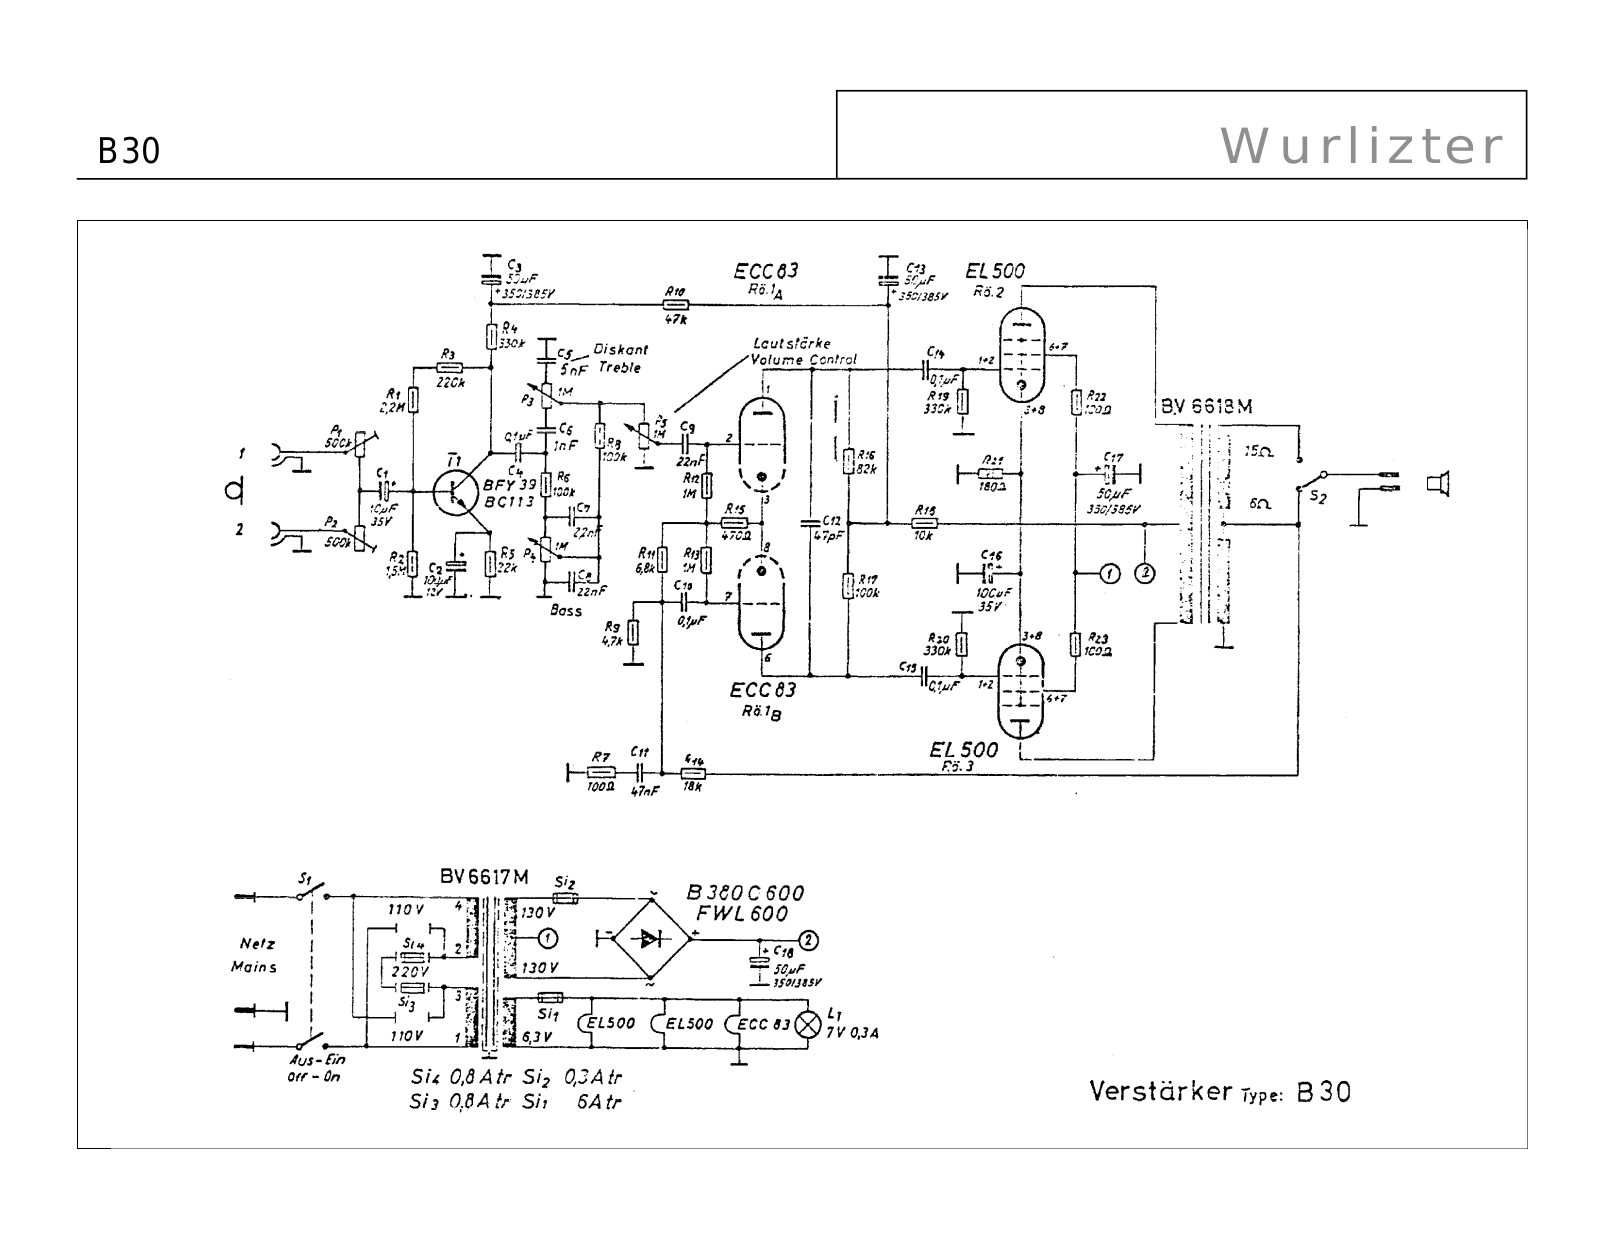 Wurlitzer b30, p38 schematic